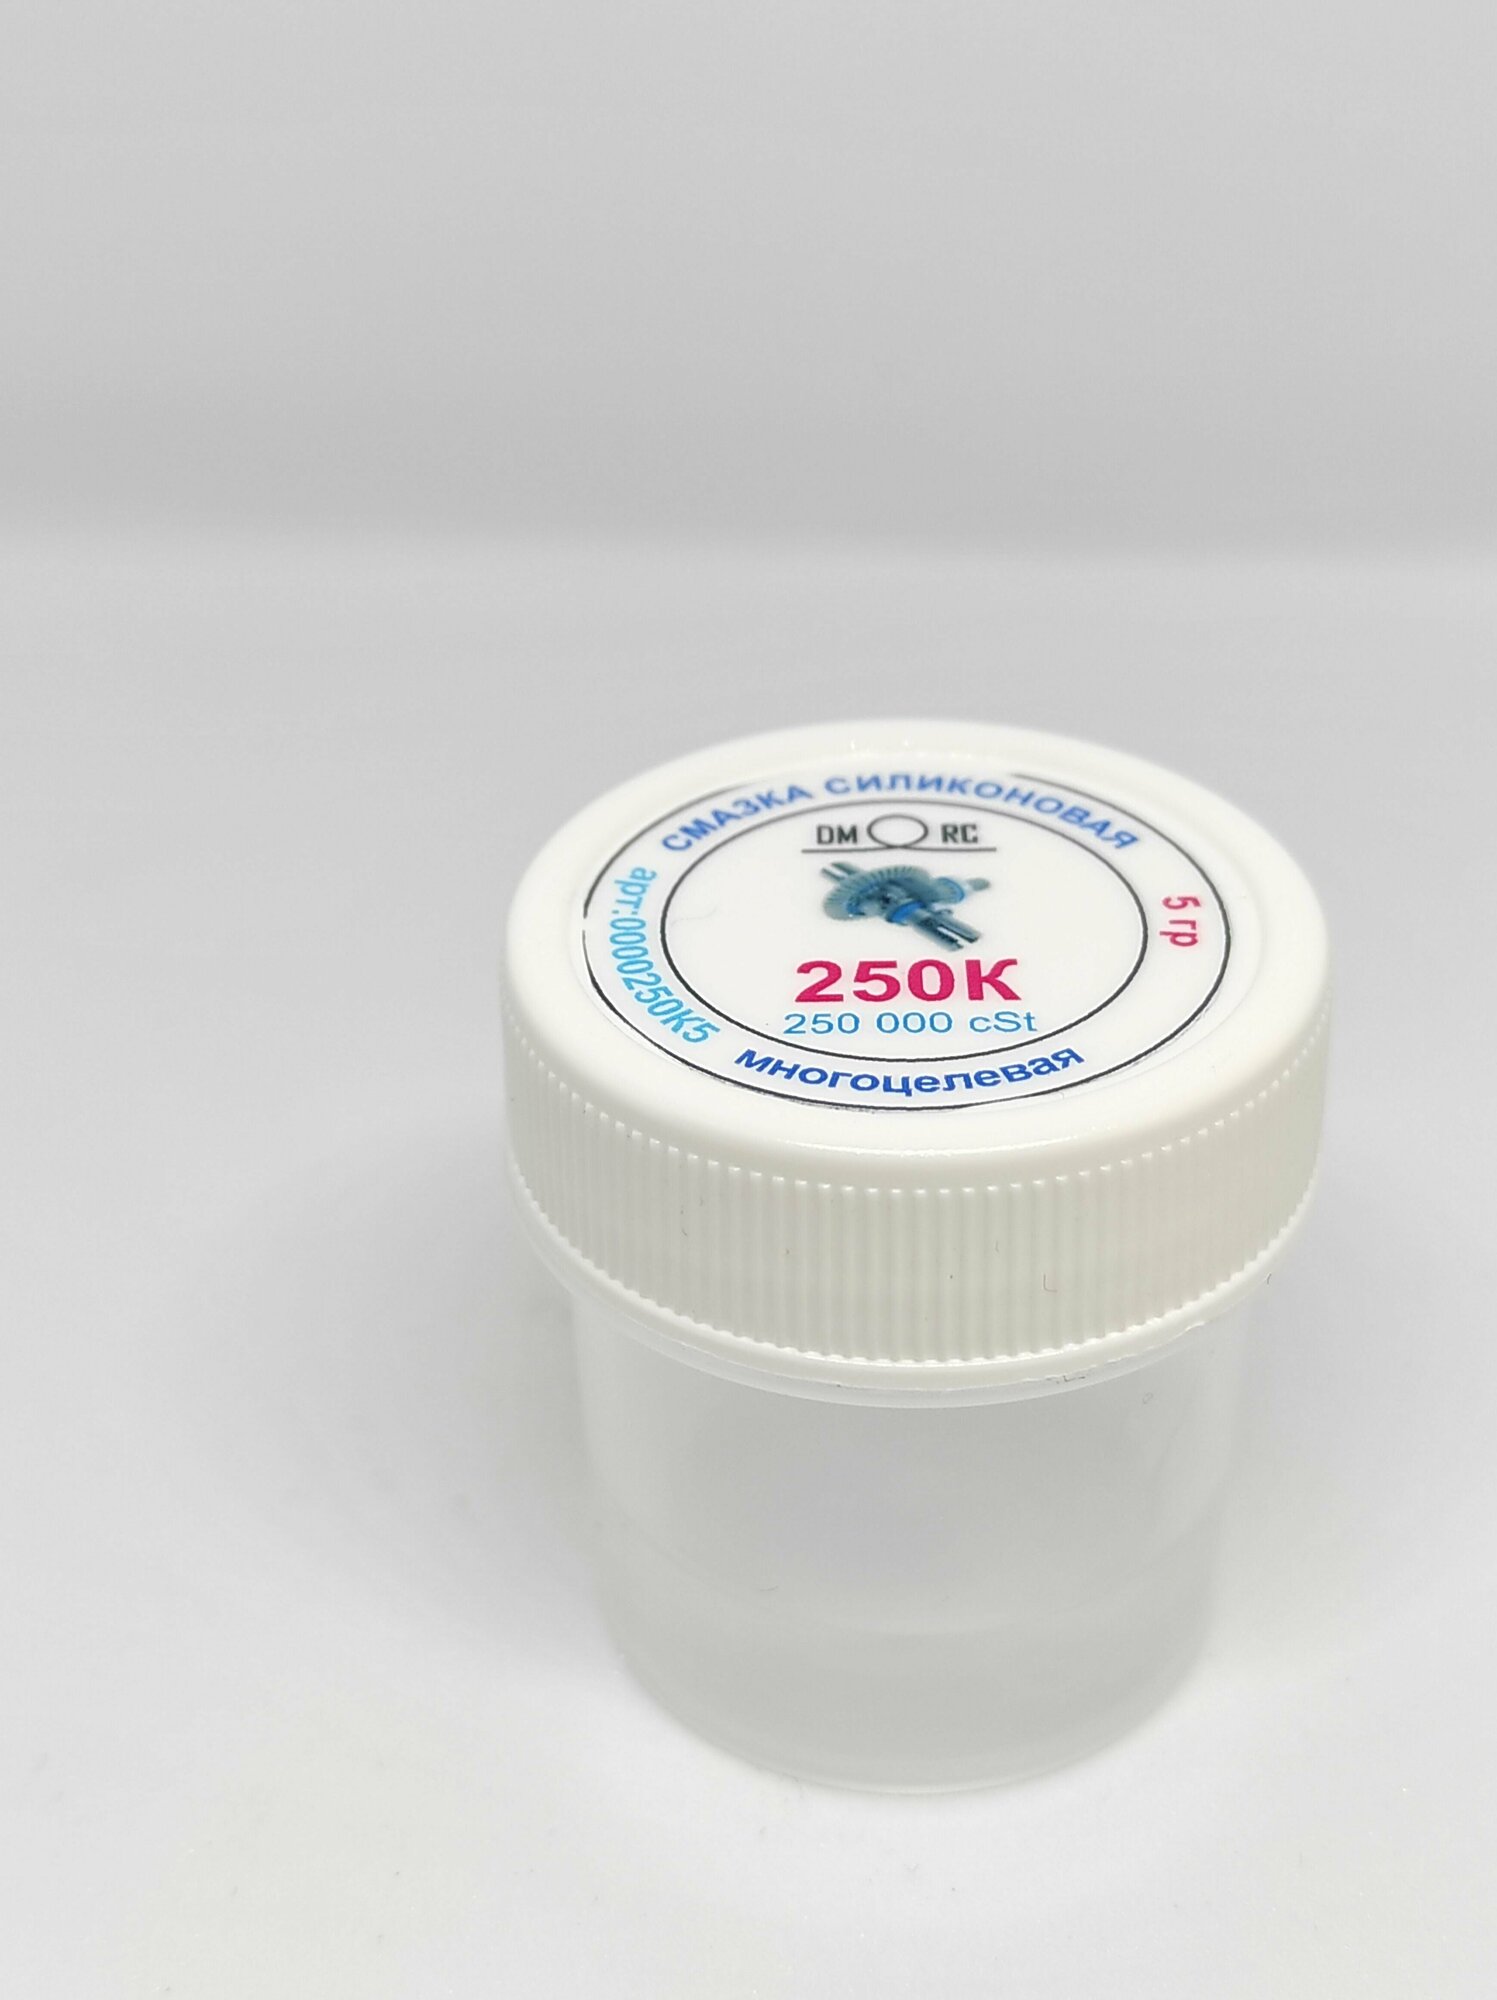 ПМС 250.000cSt силиконовое масло, полиметилсилоксан